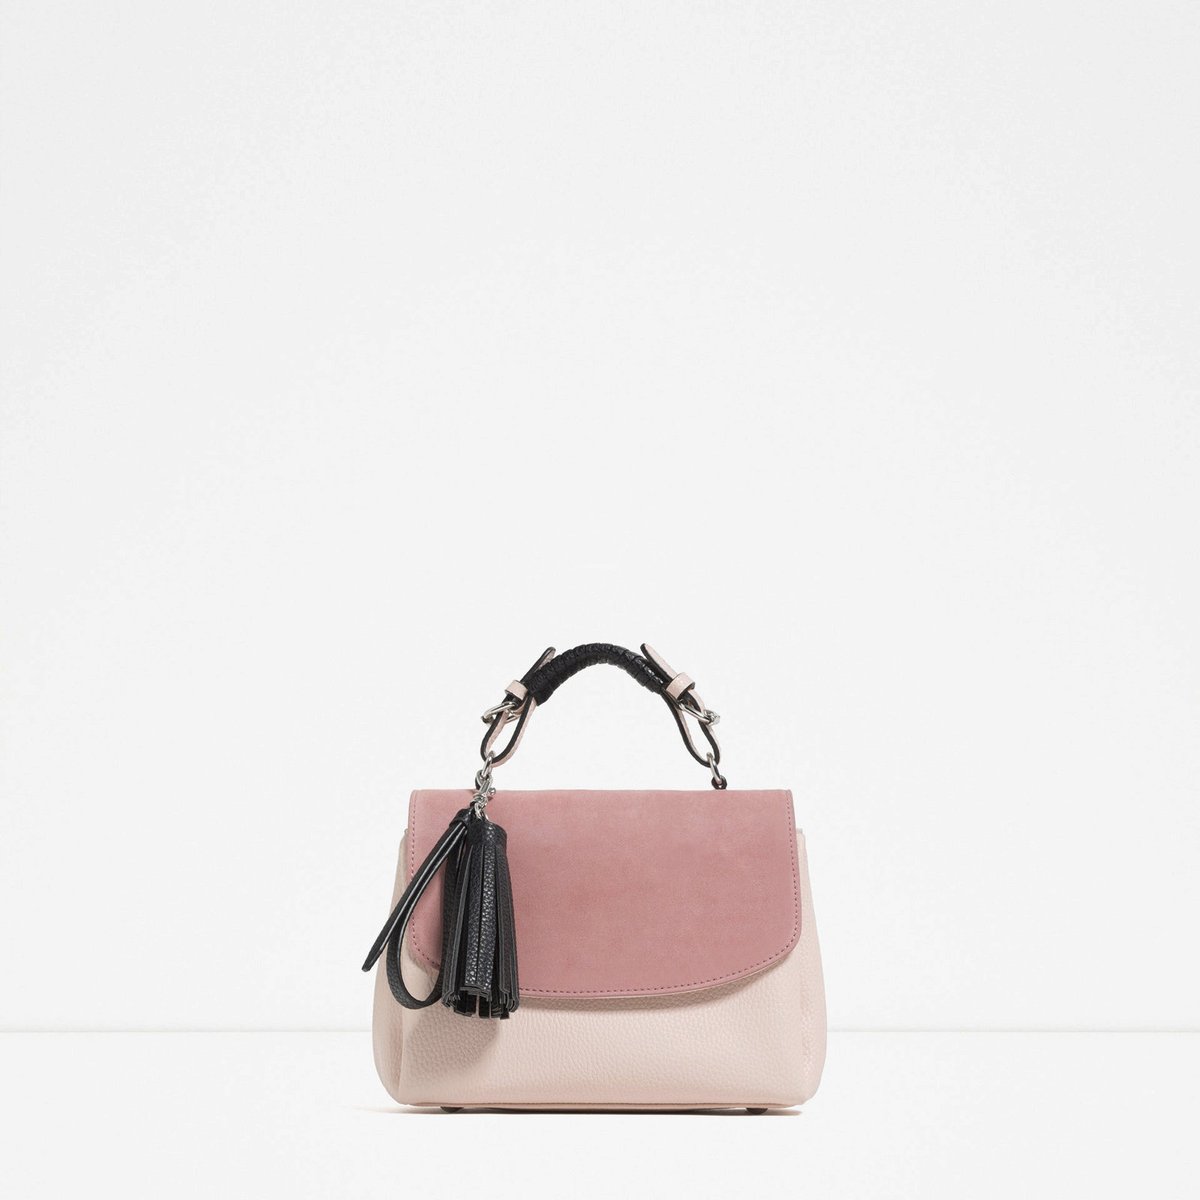 Způsob 4: Tříbarevná kabelka, Zara, 999 Kč.